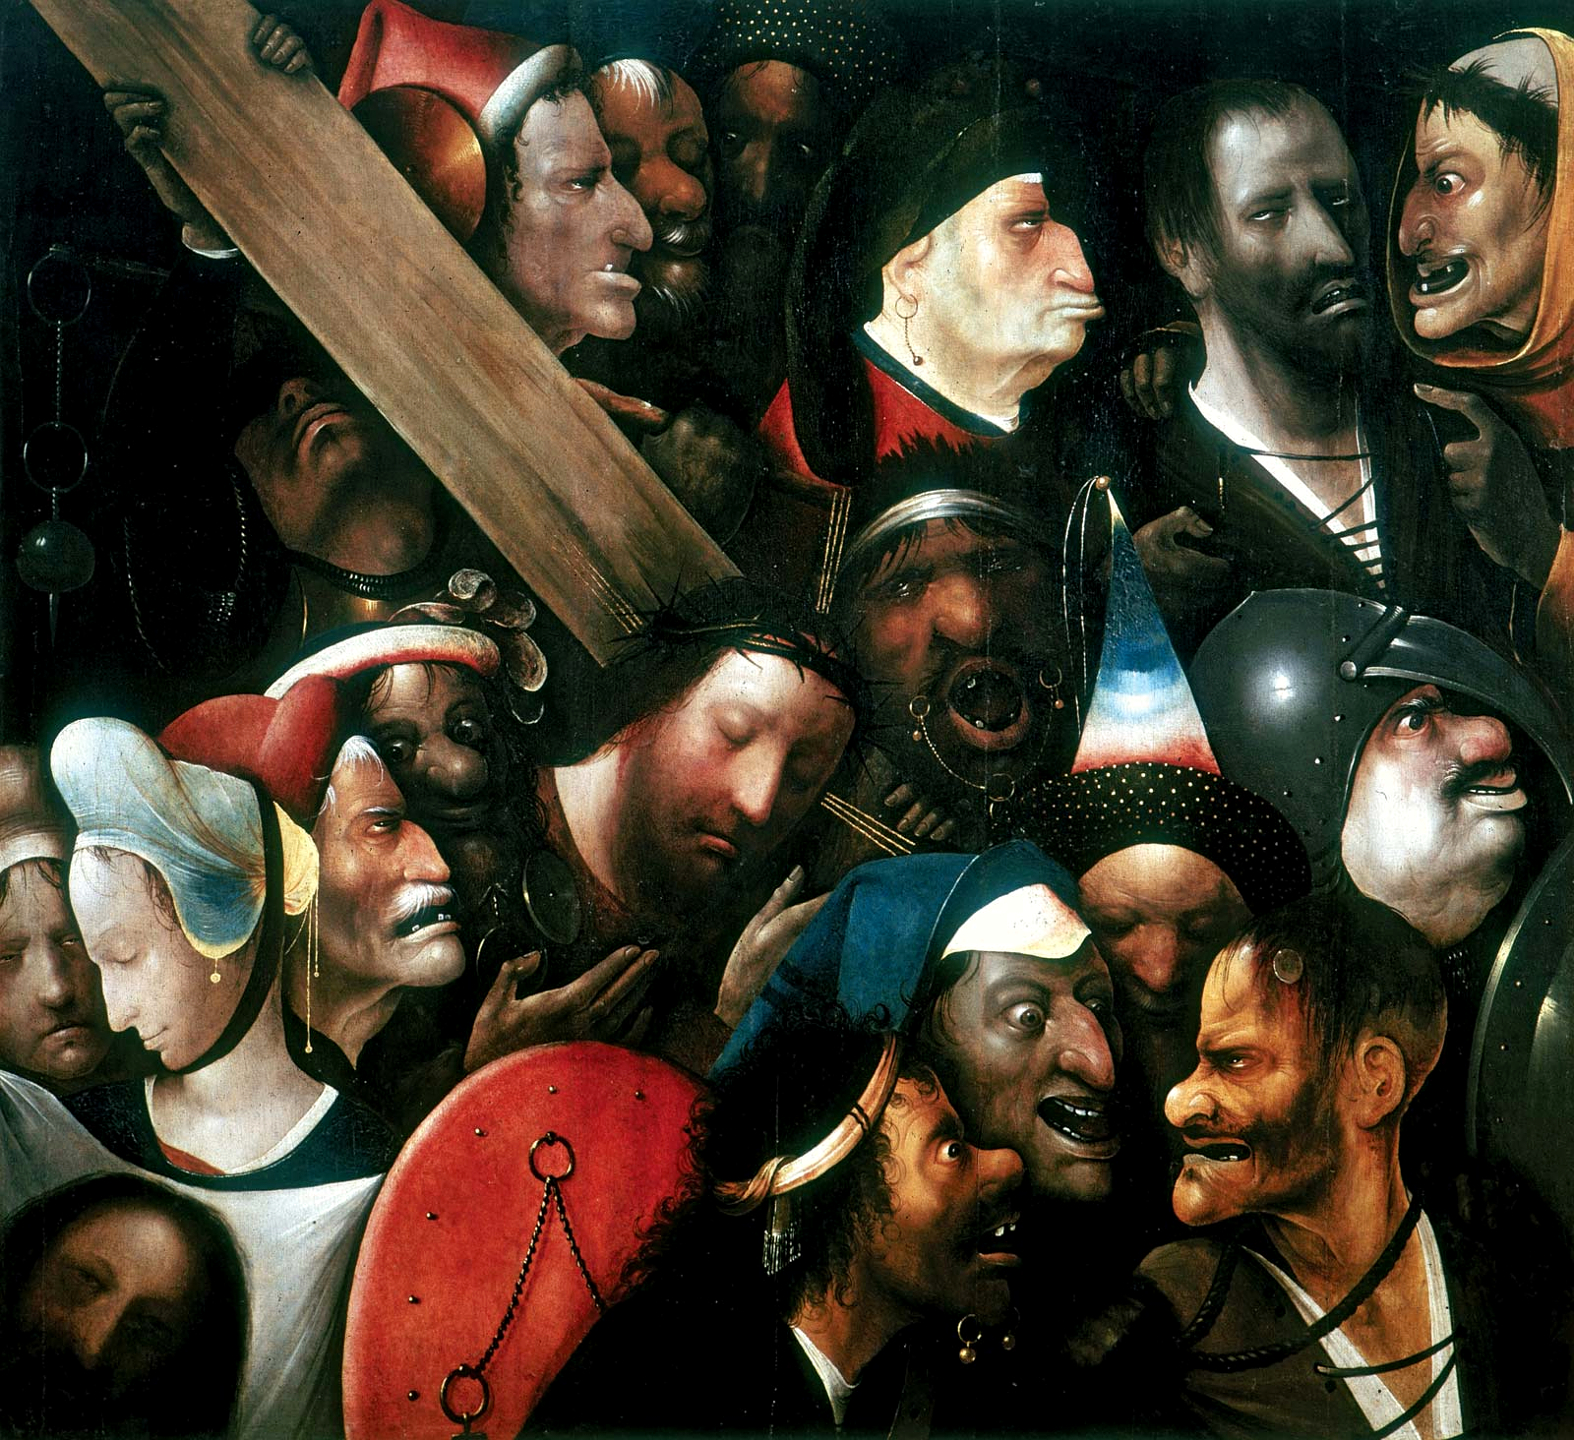 Cristo Carregando a Cruz by Hieronymus Bosch - c.1510 